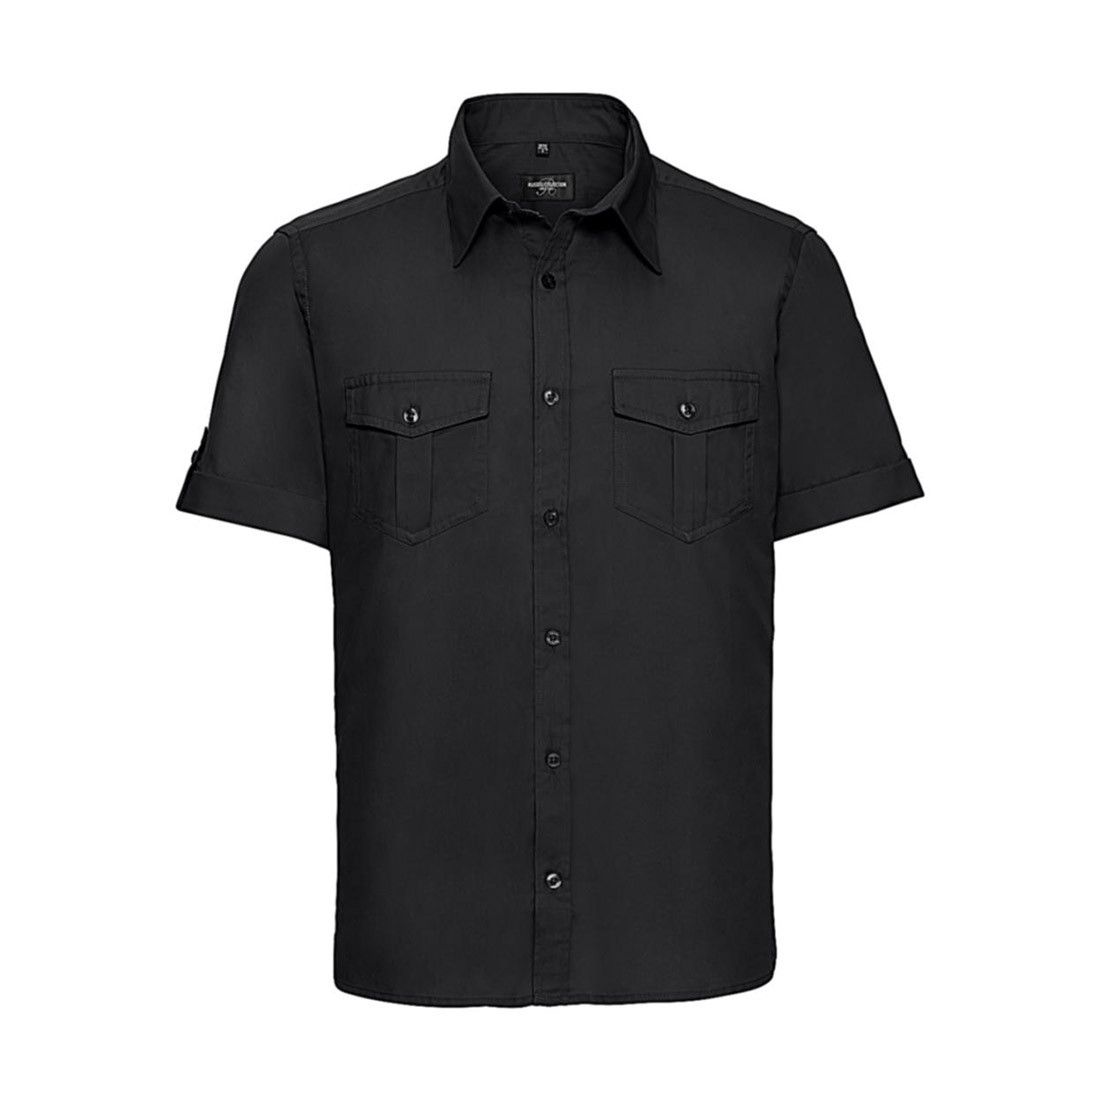 Roll Sleeve Shirt - Arbeitskleidung